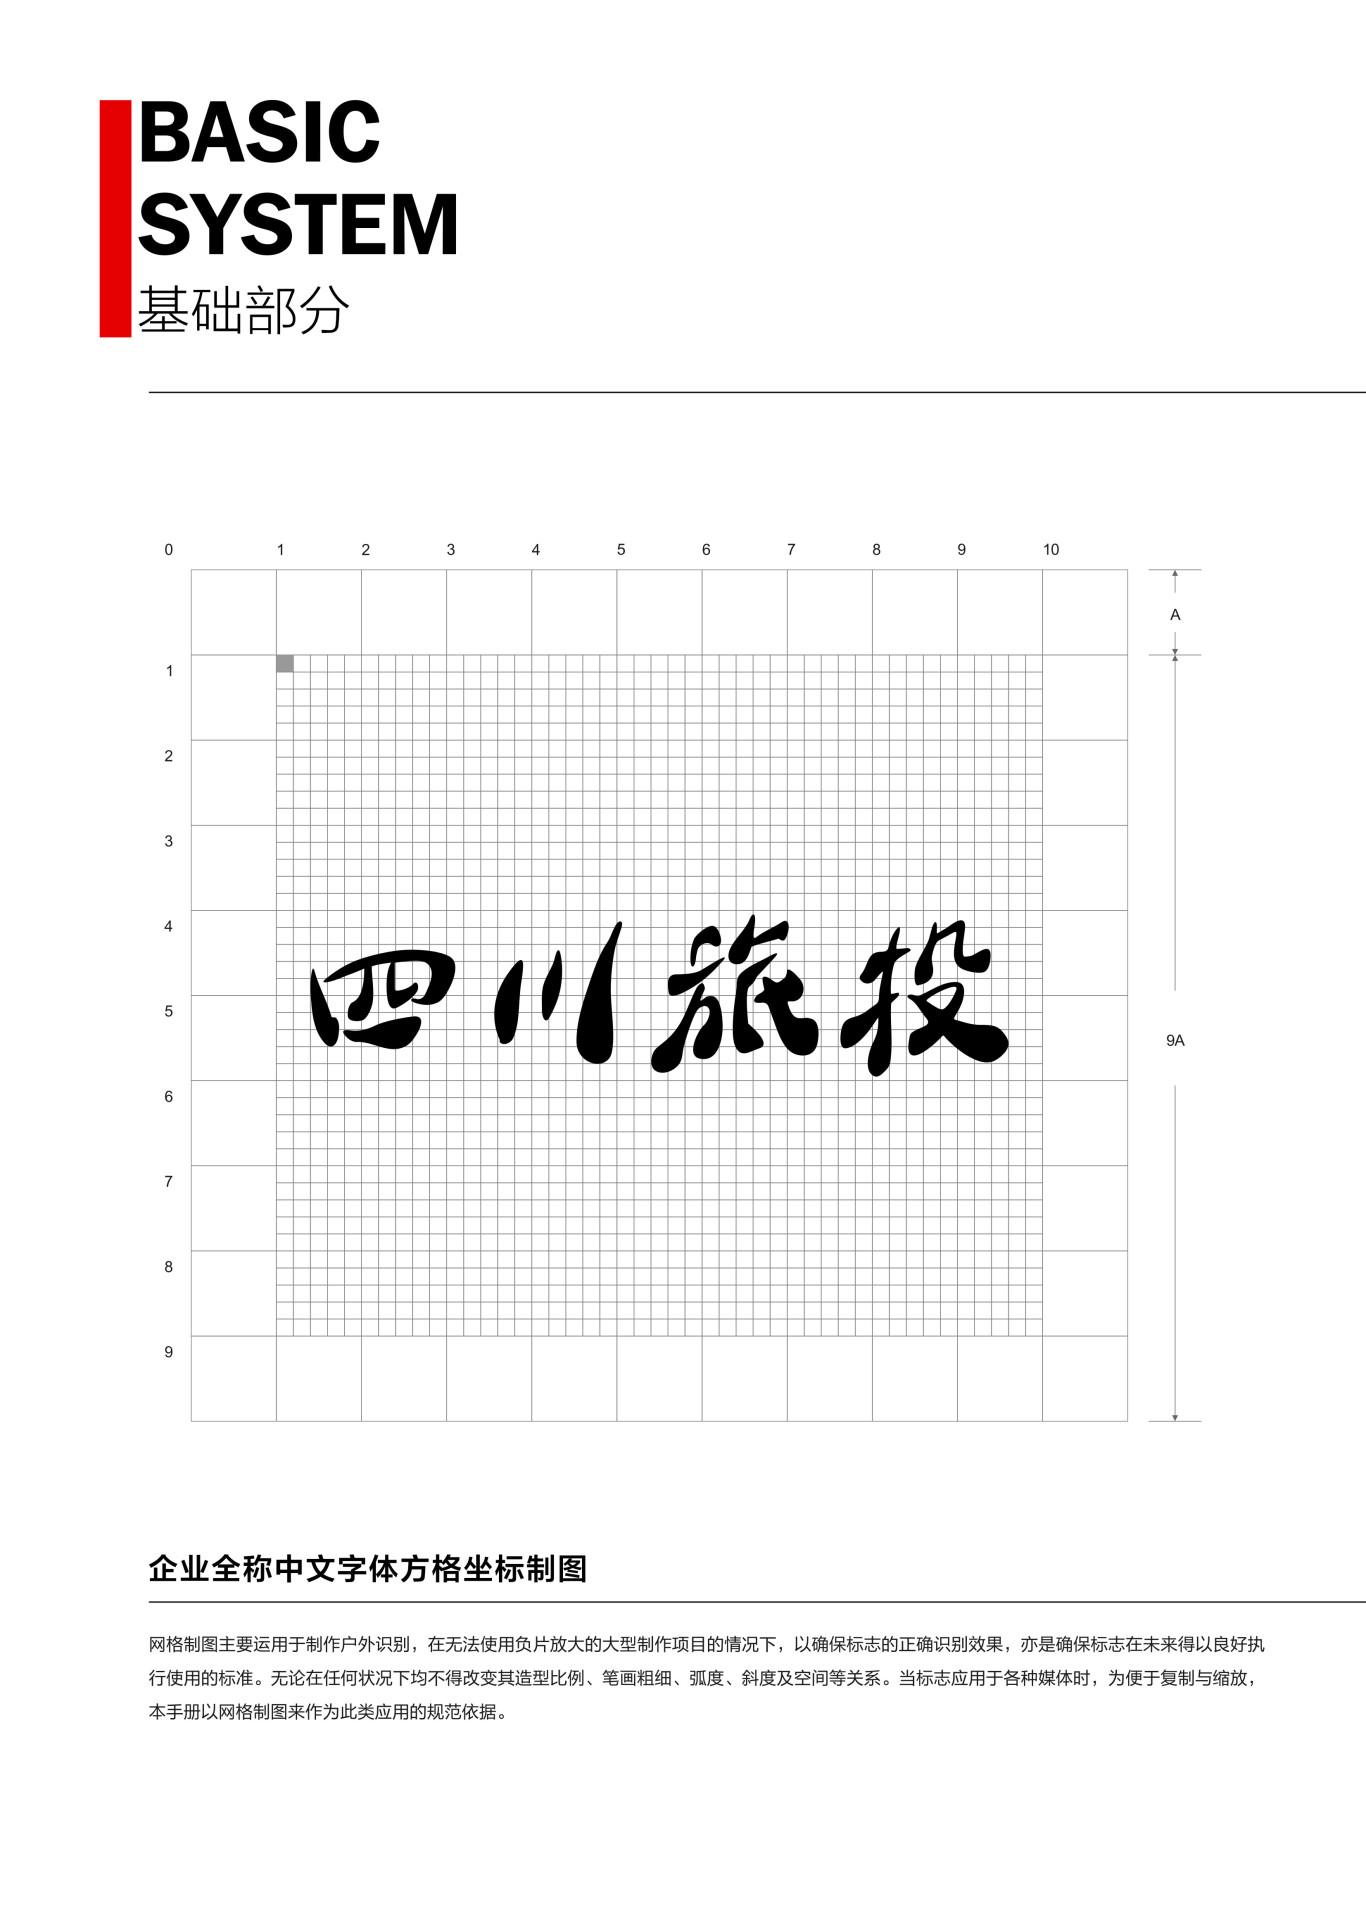 四川省旅游投资集团企业形象识别系统图3